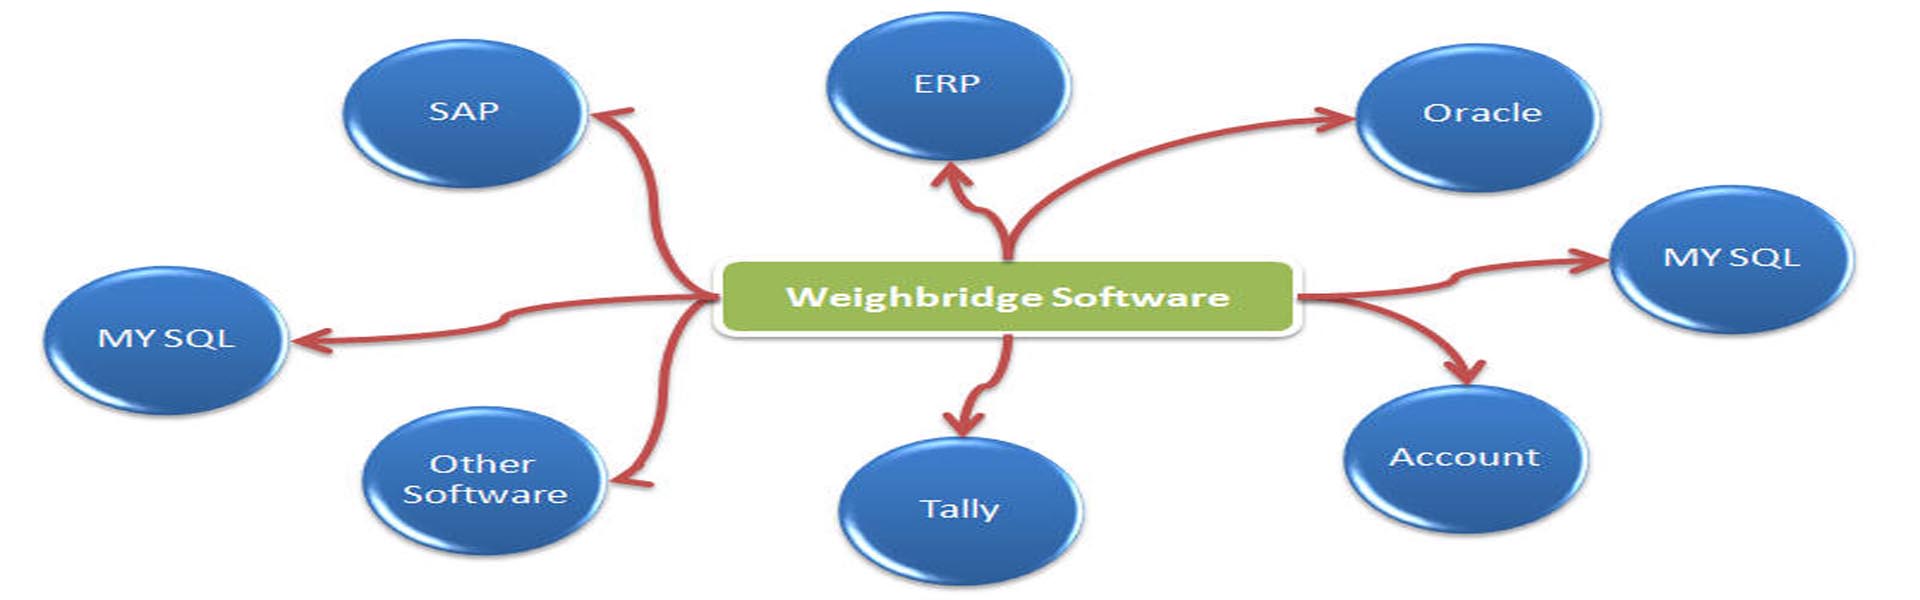 Weighbridge SAP Integration Software